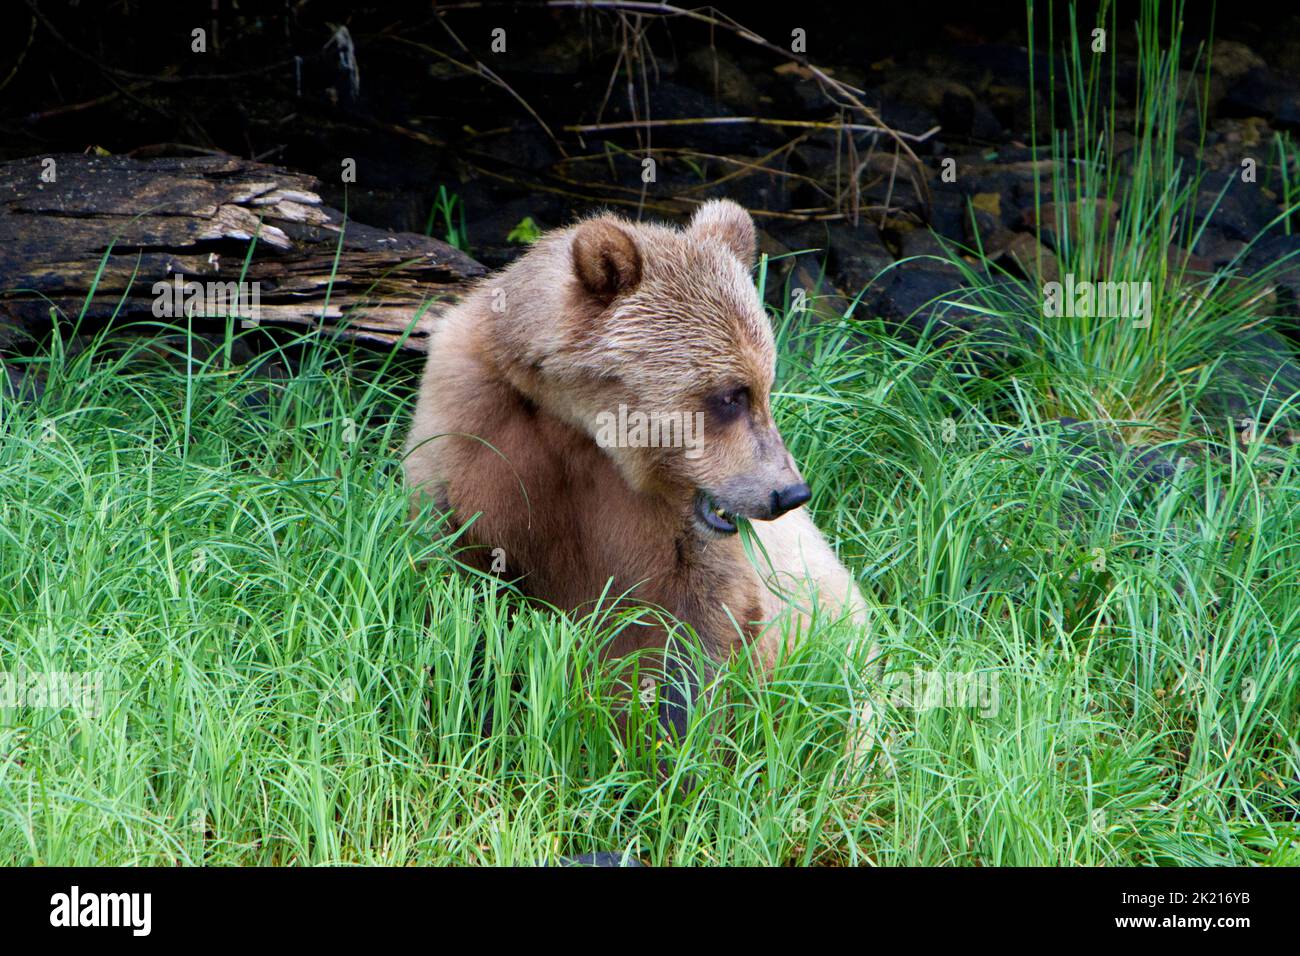 Un giovane Orso Grizzly (Ursus arctos horribilis) che si nutre di erba lungo le rive dell'insenatura Khutzeymateen a nord del Principe Rupert, BC, Canada nel mese di luglio Foto Stock